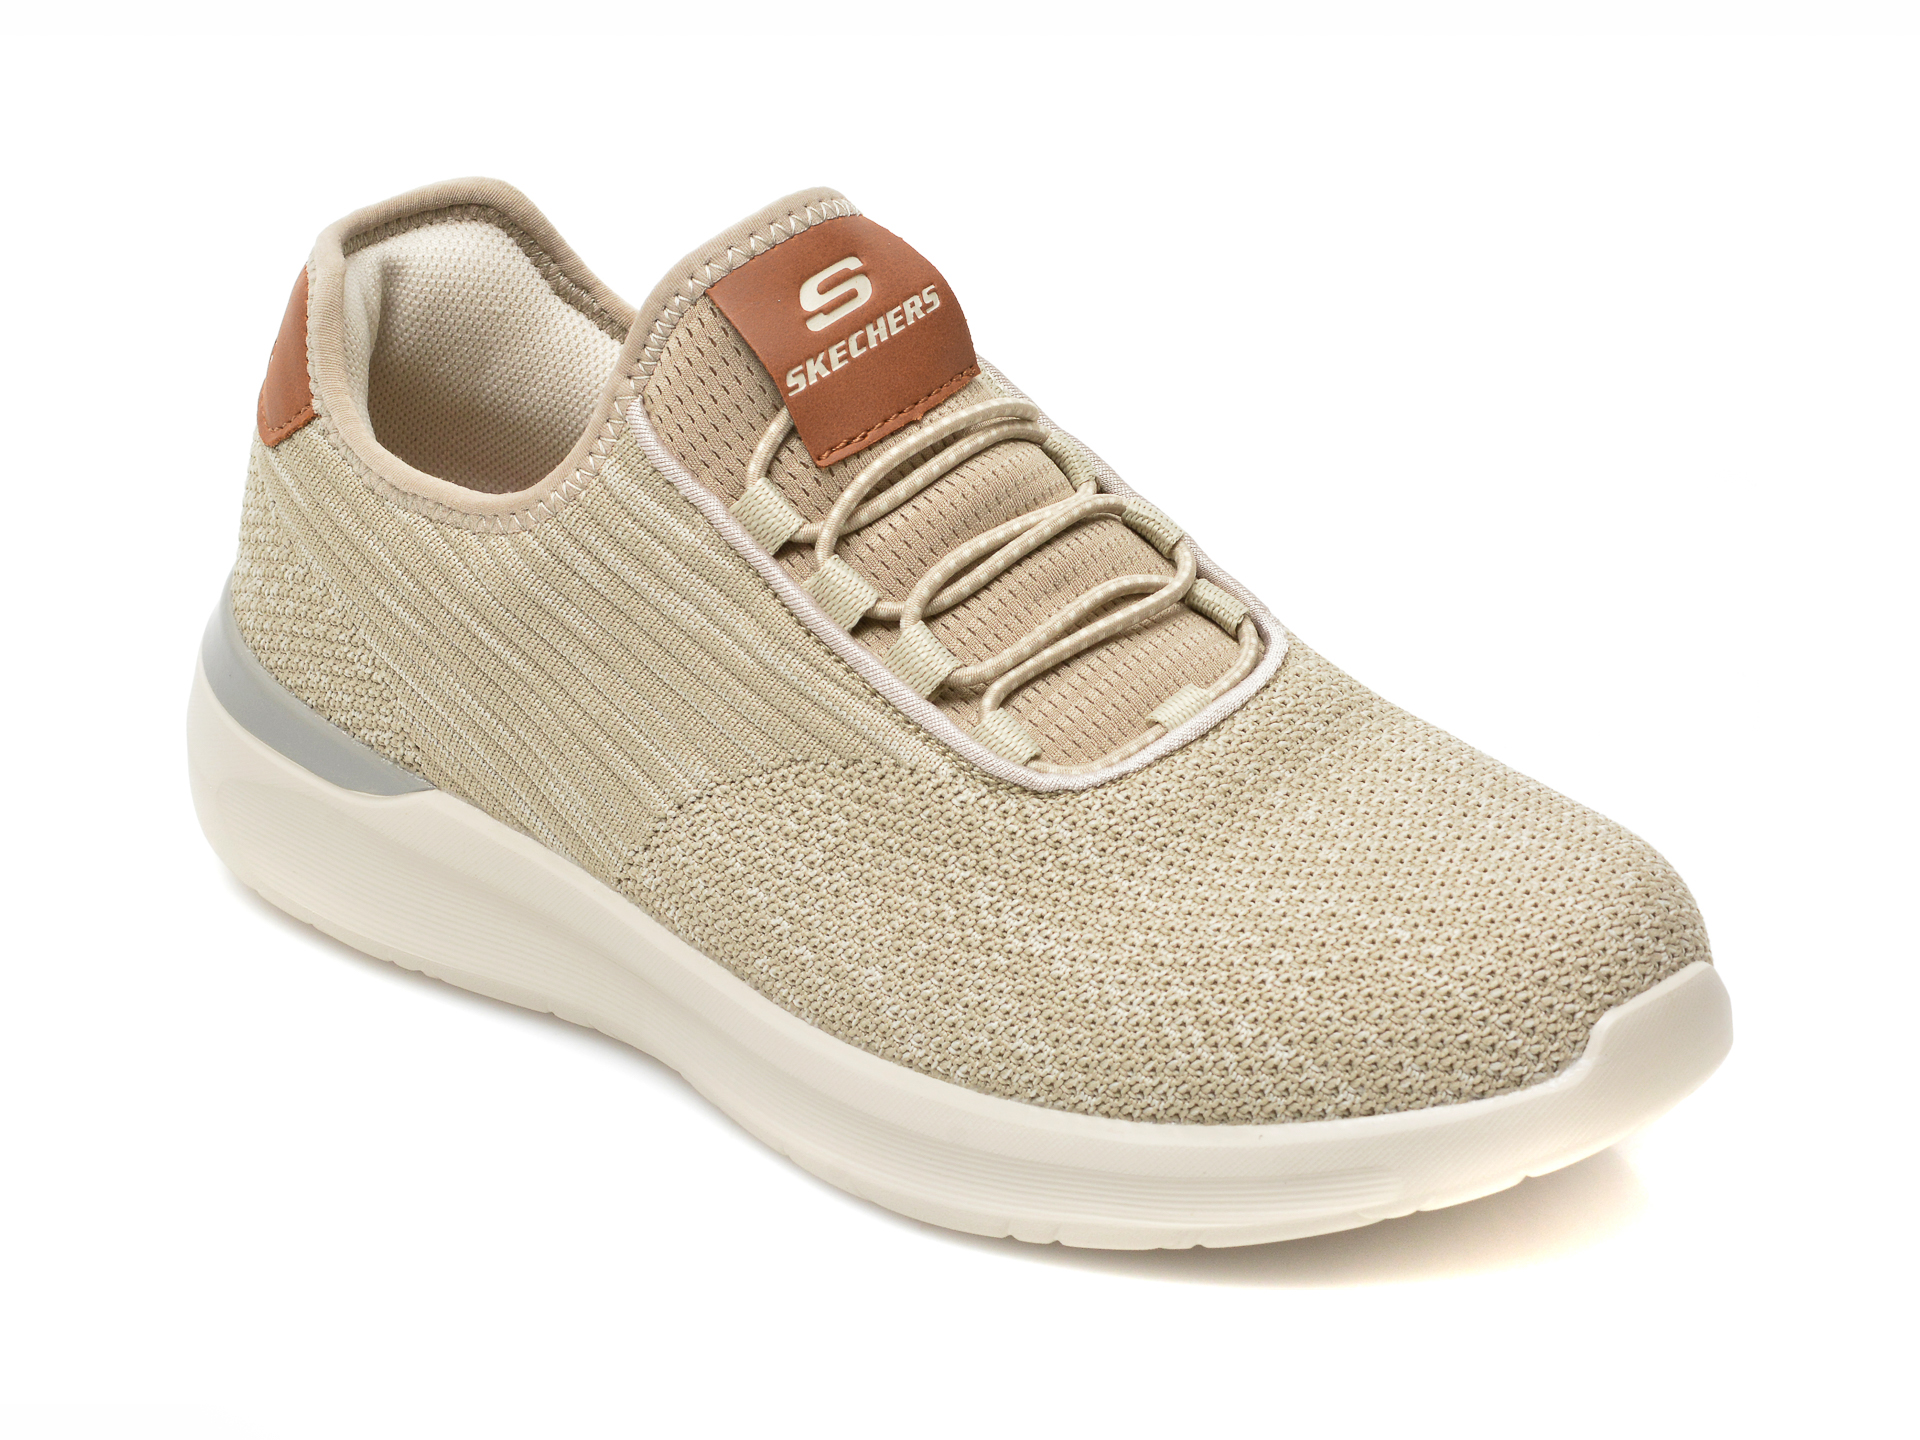 Pantofi sport SKECHERS gri, LATTIMORE, din material textil otter.ro otter.ro